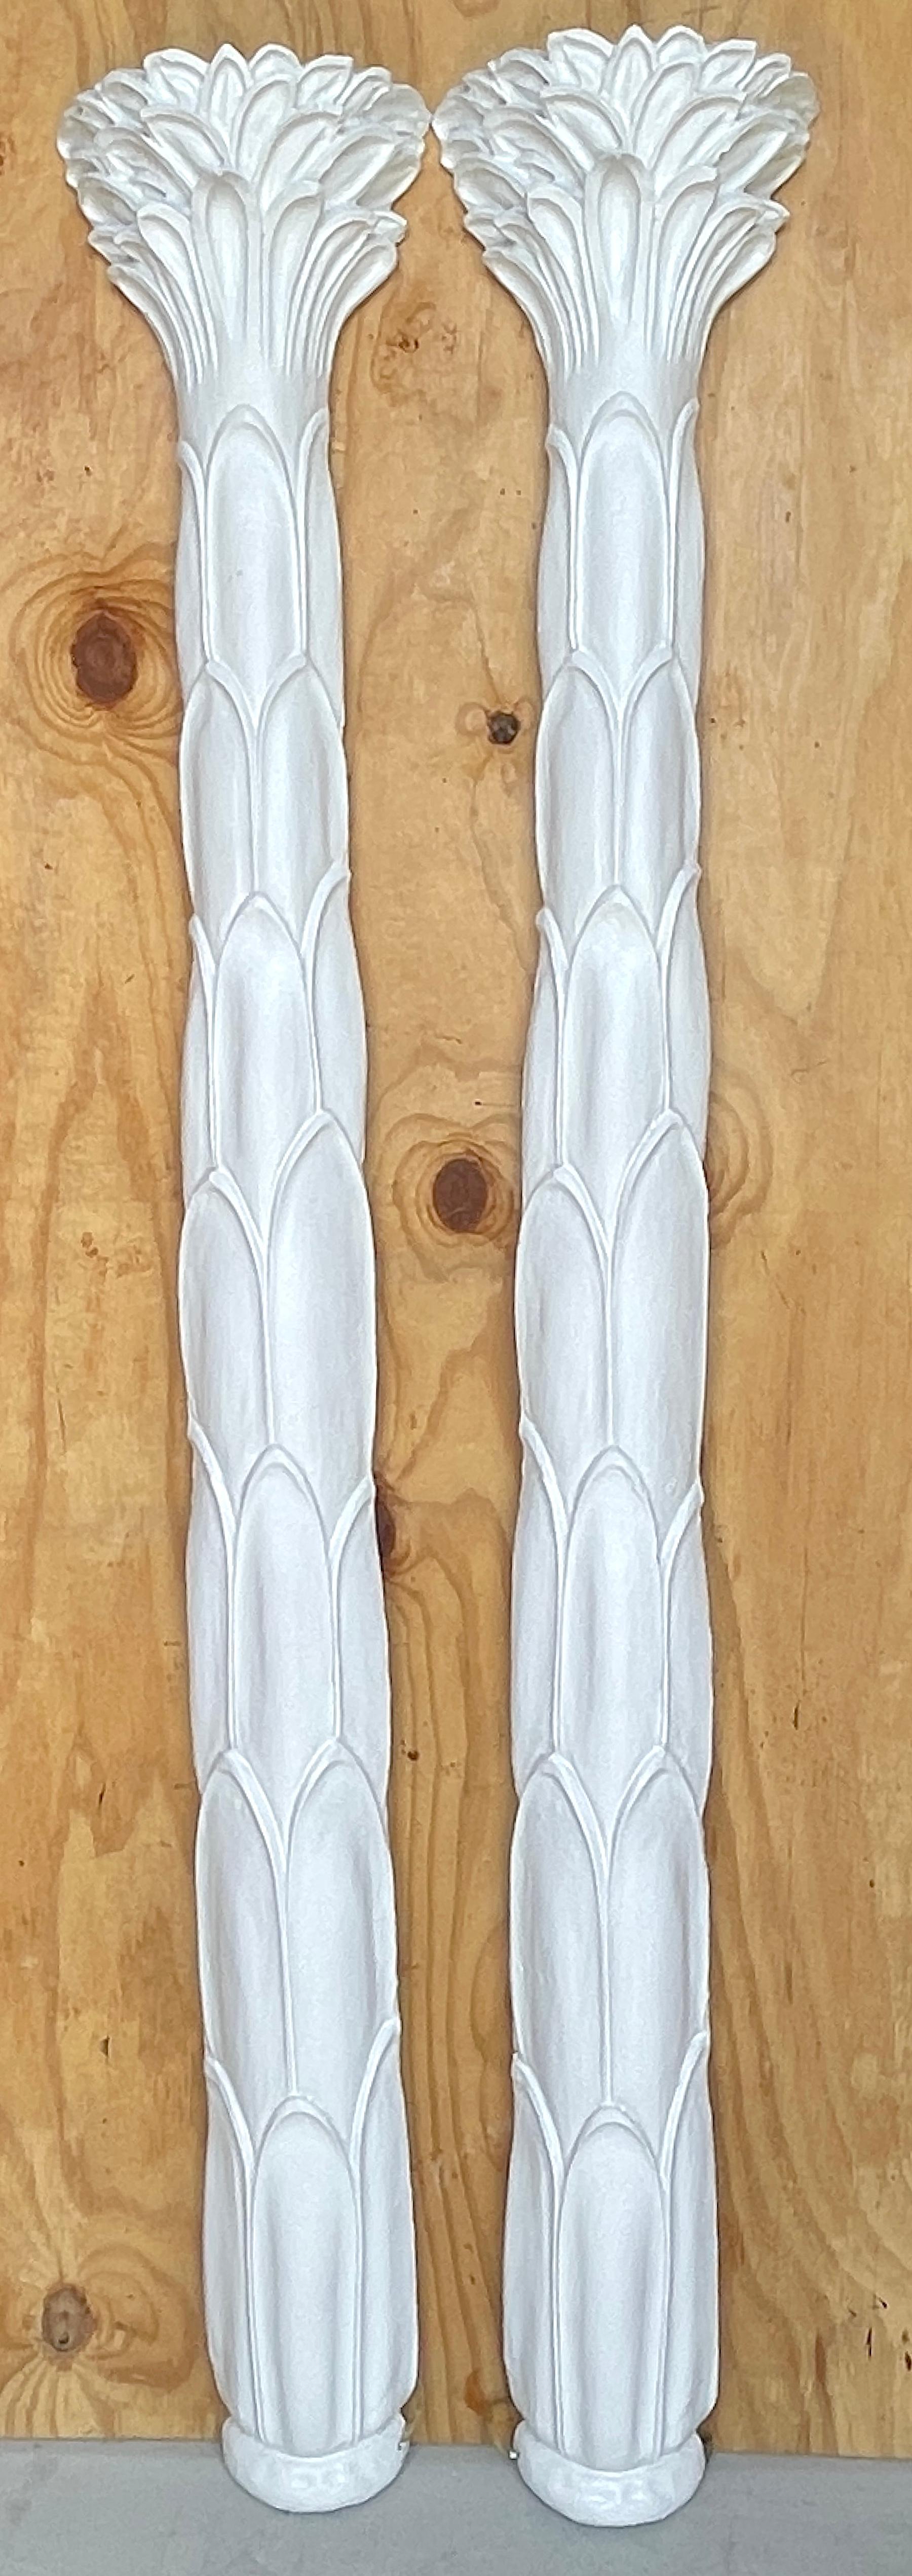 Paar Palmettenfackeln im Stil von Serge Roche
Circa 1970er Jahre

Paar Serge Roche Style Palmette Torchieres Wandmontage Palmen Stehlampen. Jede Leuchte ist ein atemberaubendes Beispiel für stromlinienförmiges modernes Design, inspiriert von der